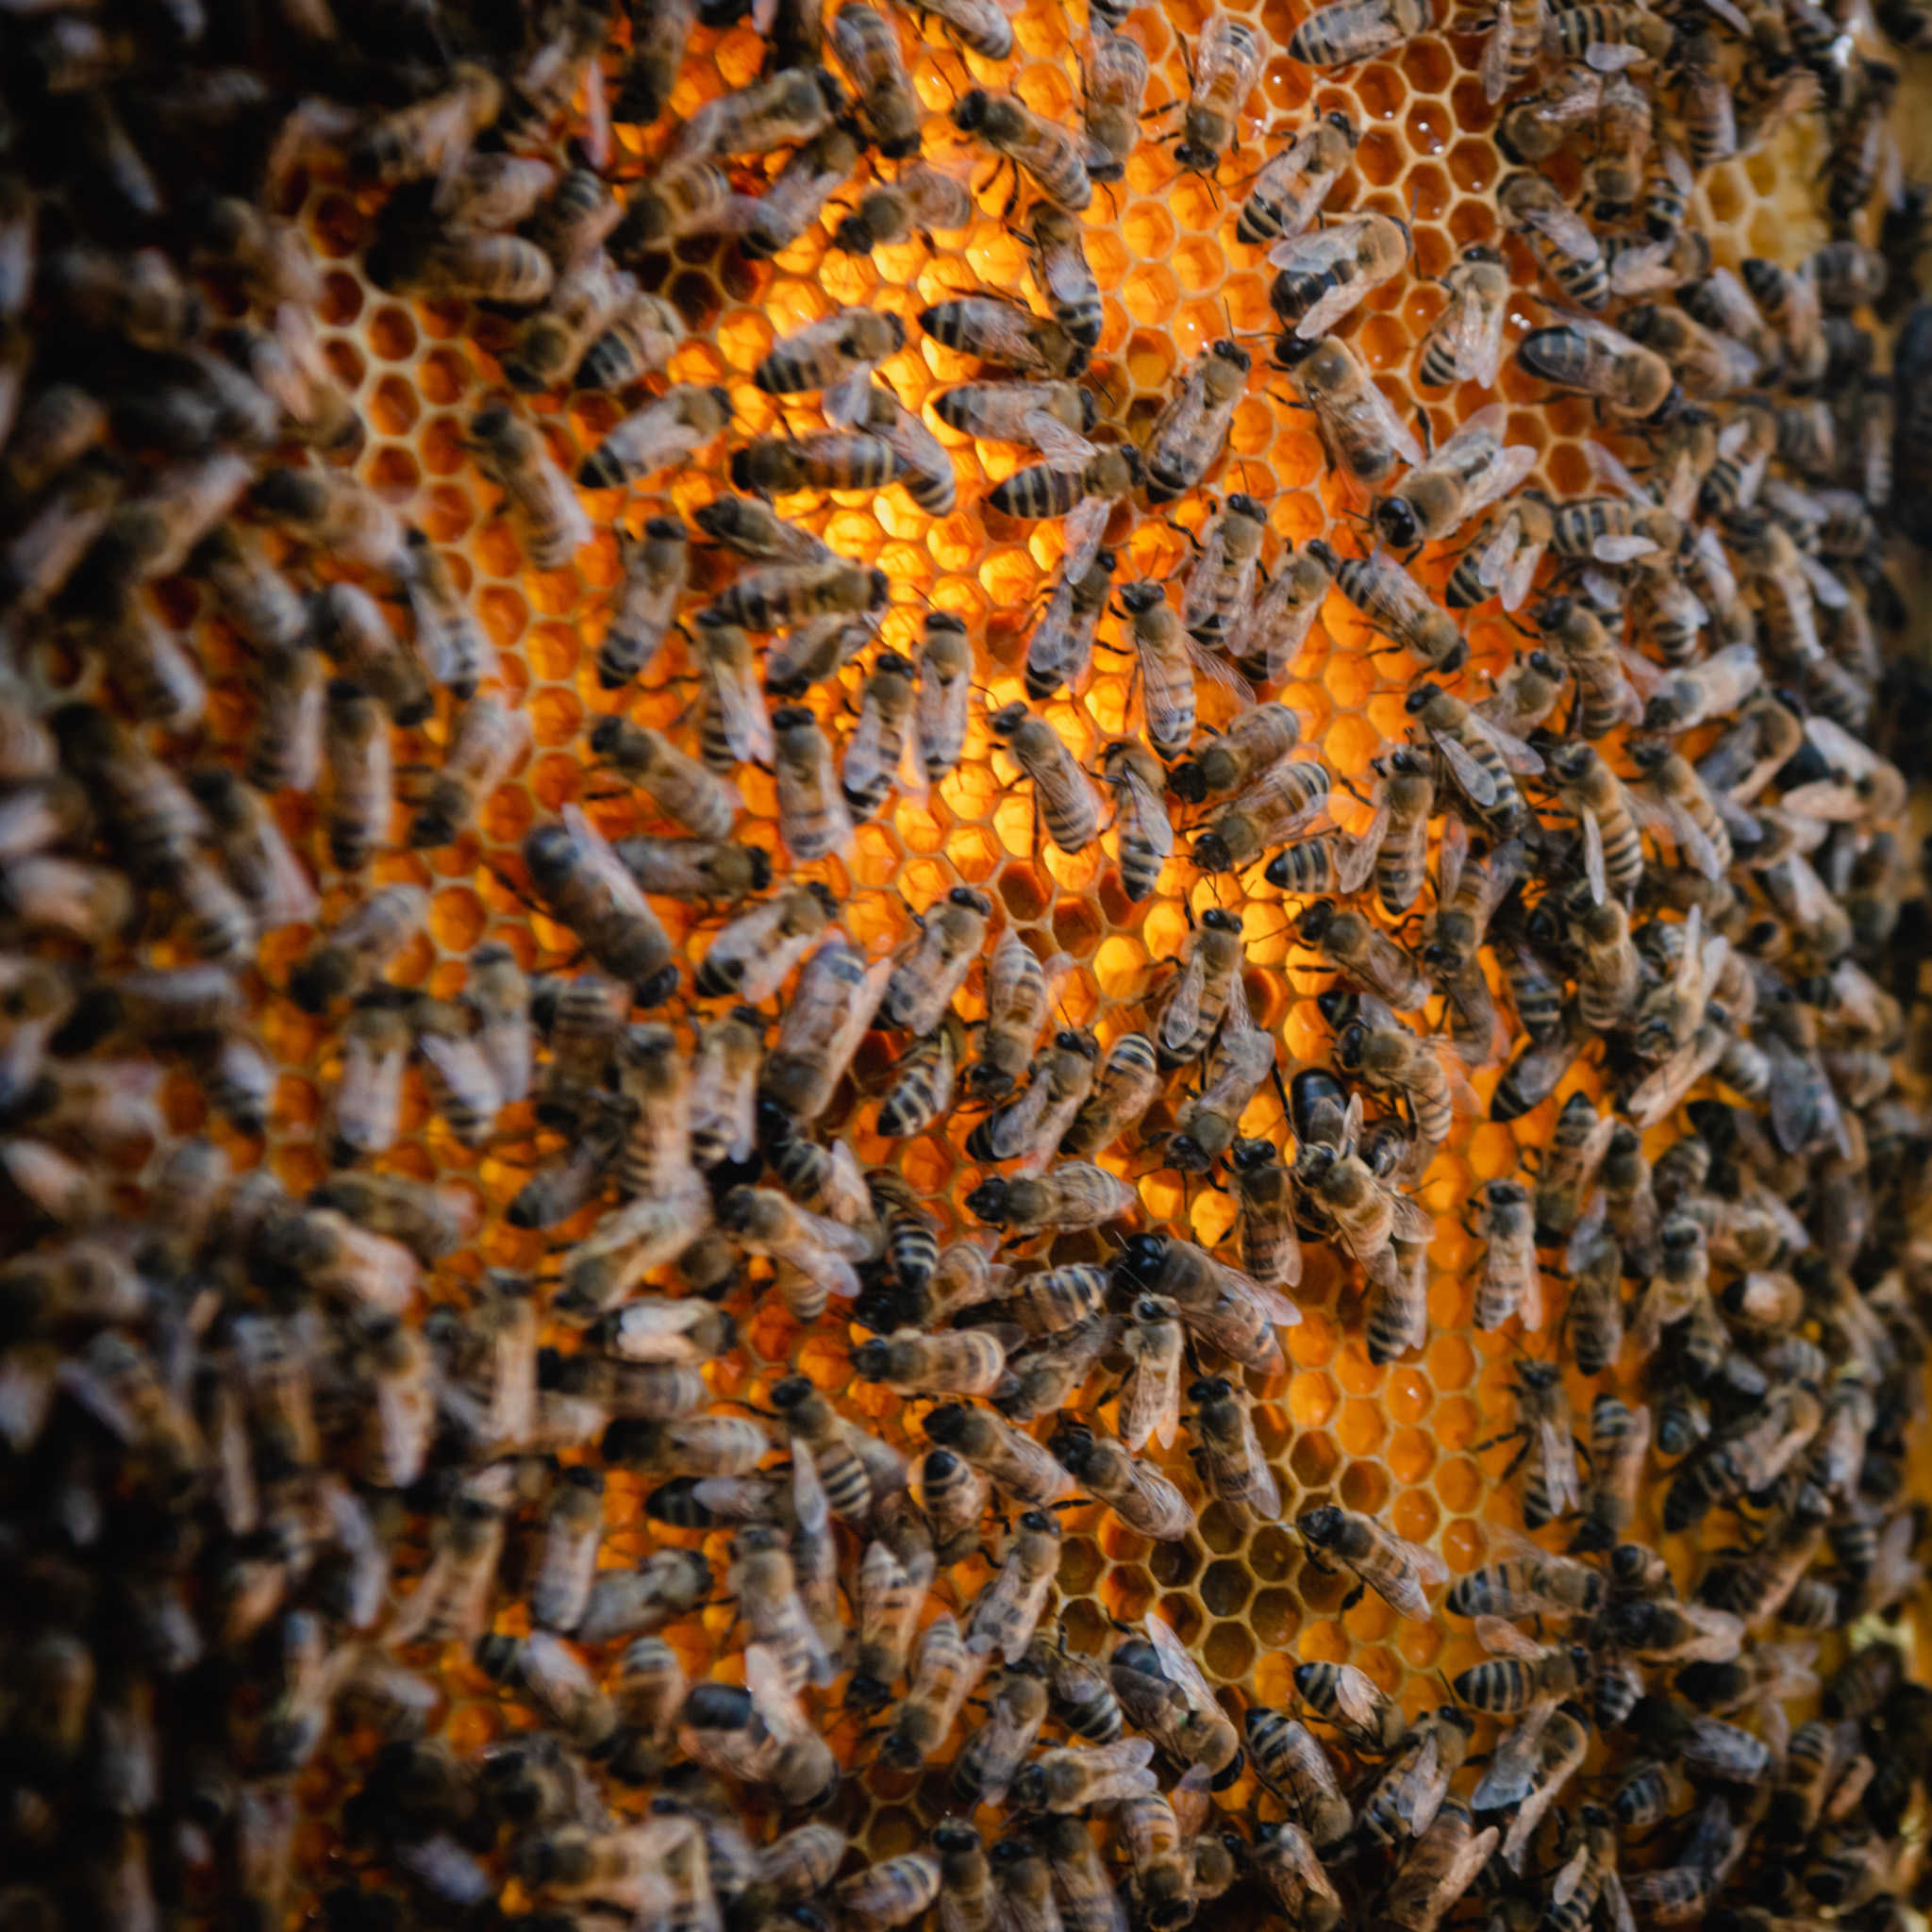 Bees_at_Fattoria_di_Montemaggio